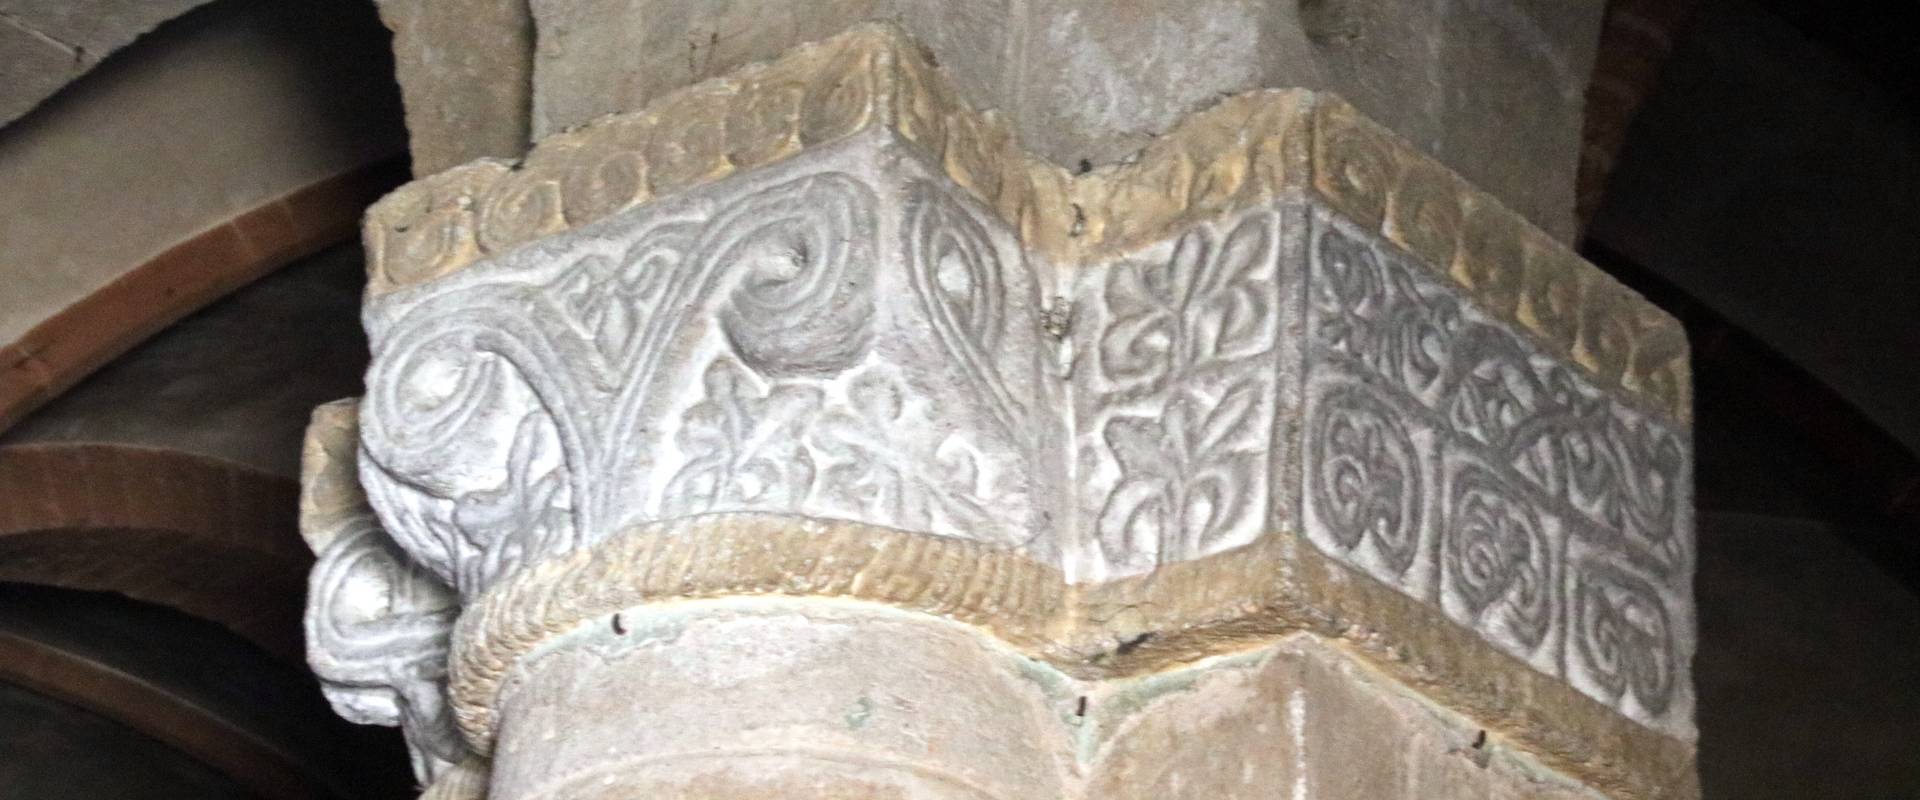 Collegiata di Santa Maria (Castell'Arquato), capitello, inizi sec. xii 02 foto di Mongolo1984